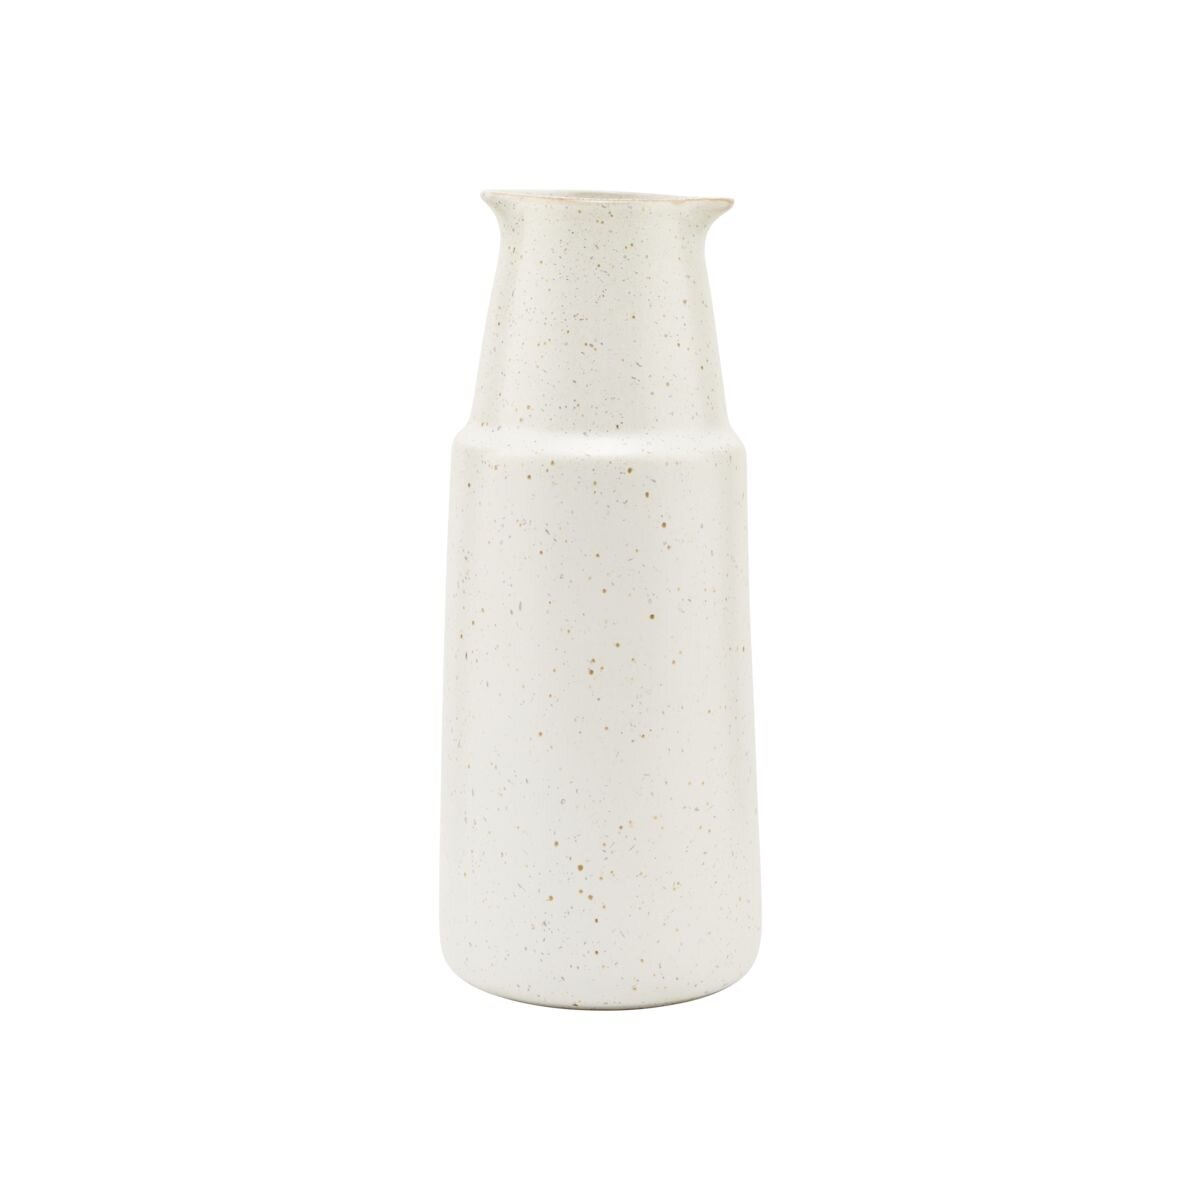 Pion - White stoneware bottle